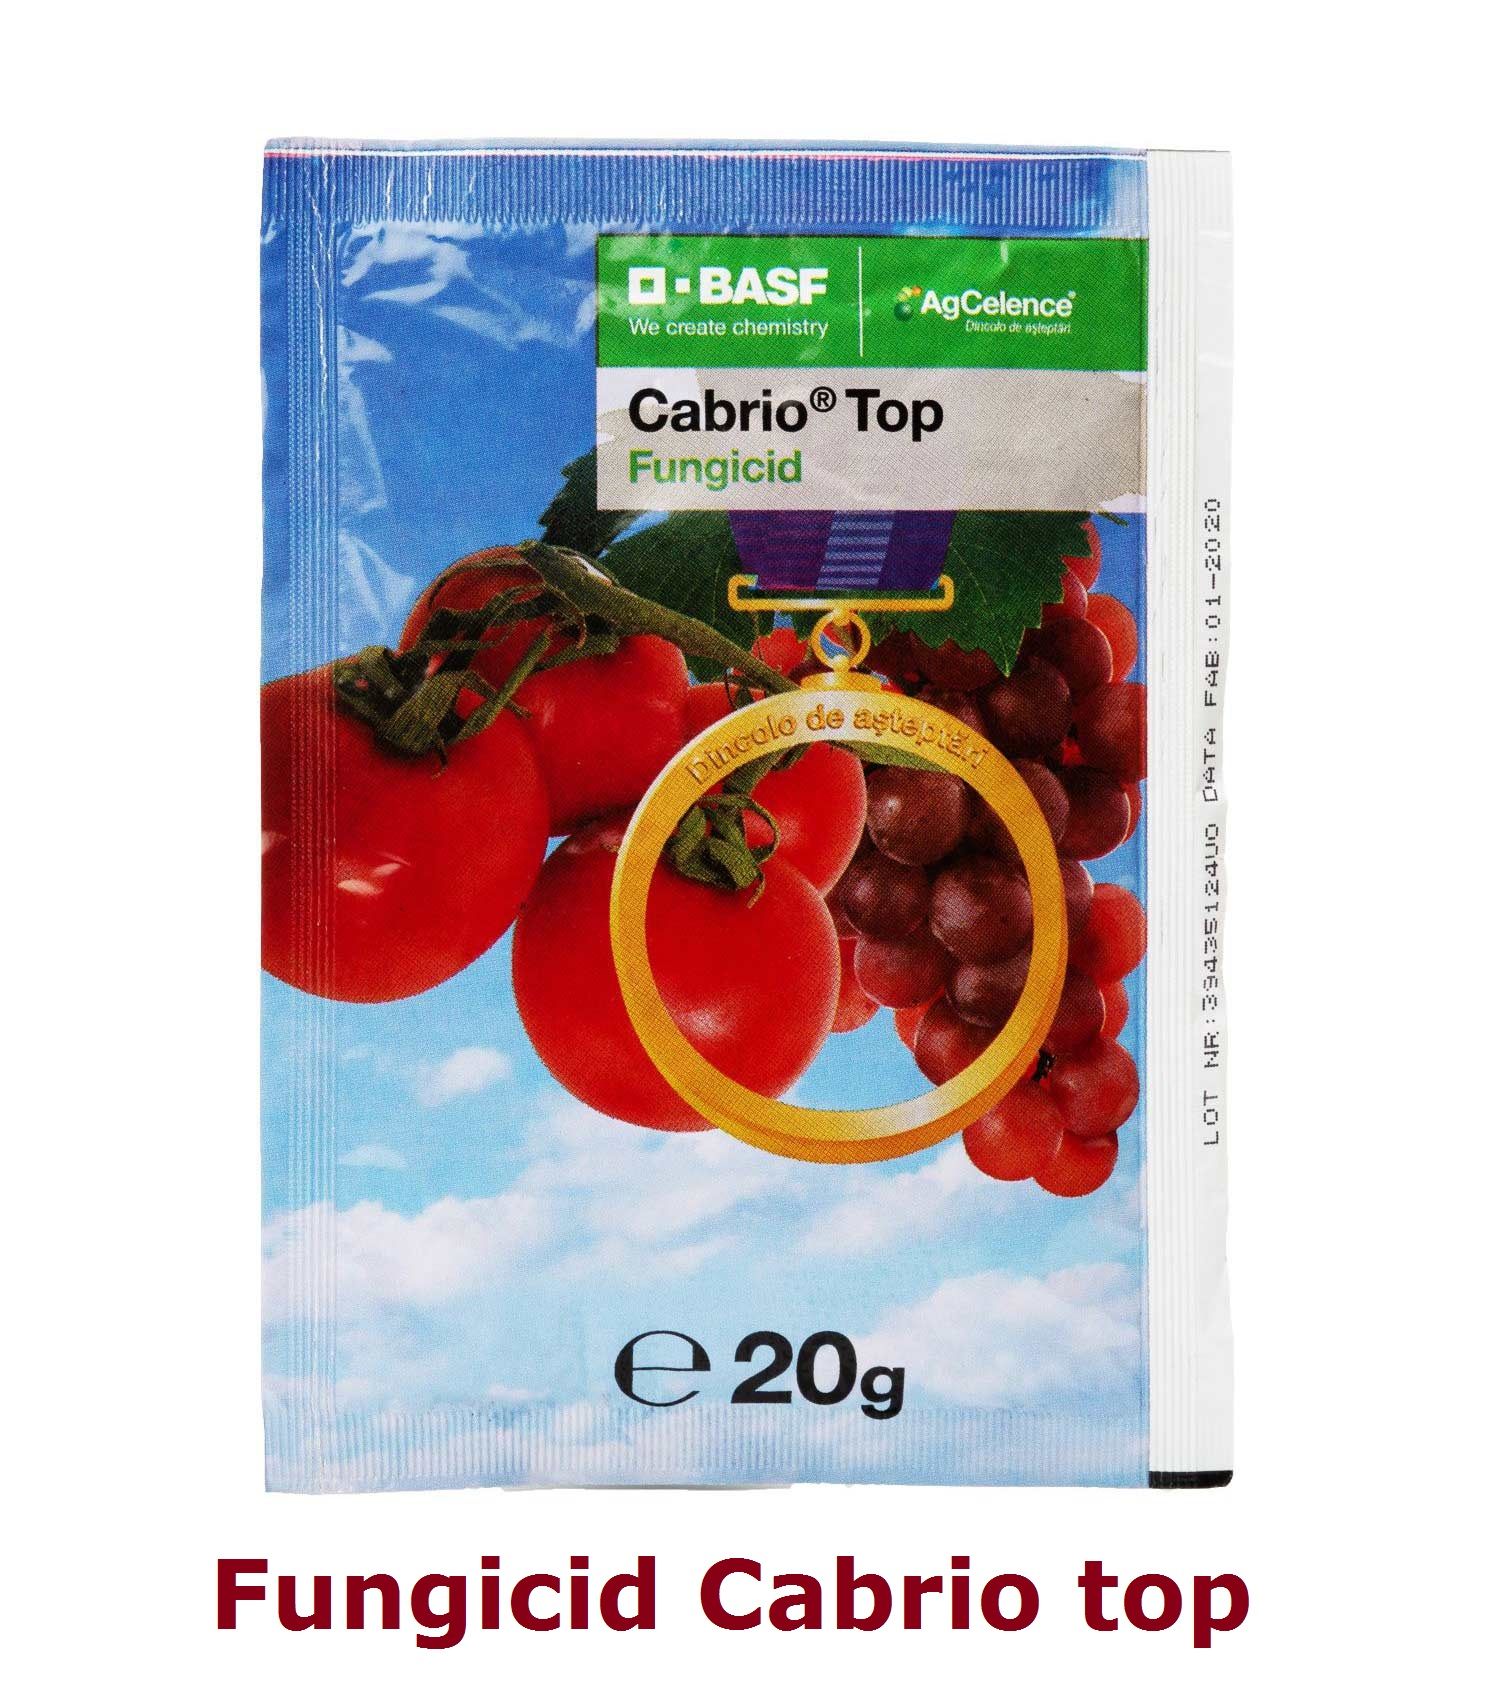 Mana la tomate - fungicid Cabrio top 